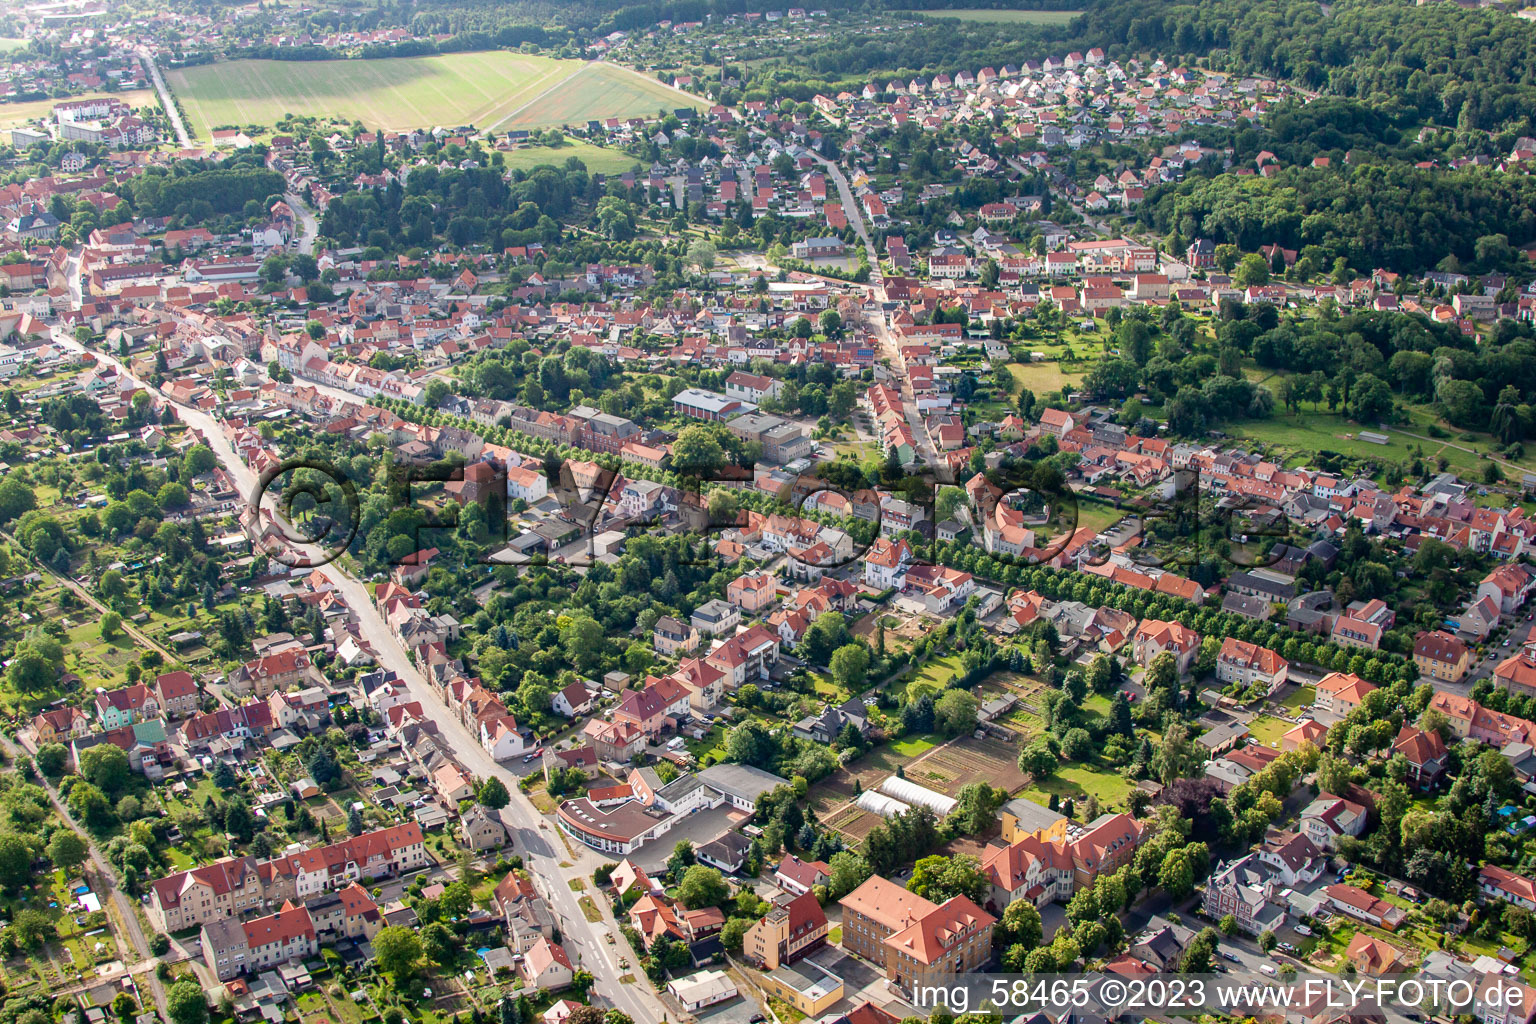 Photographie aérienne de Entre B185 et Allee à Ballenstedt dans le département Saxe-Anhalt, Allemagne